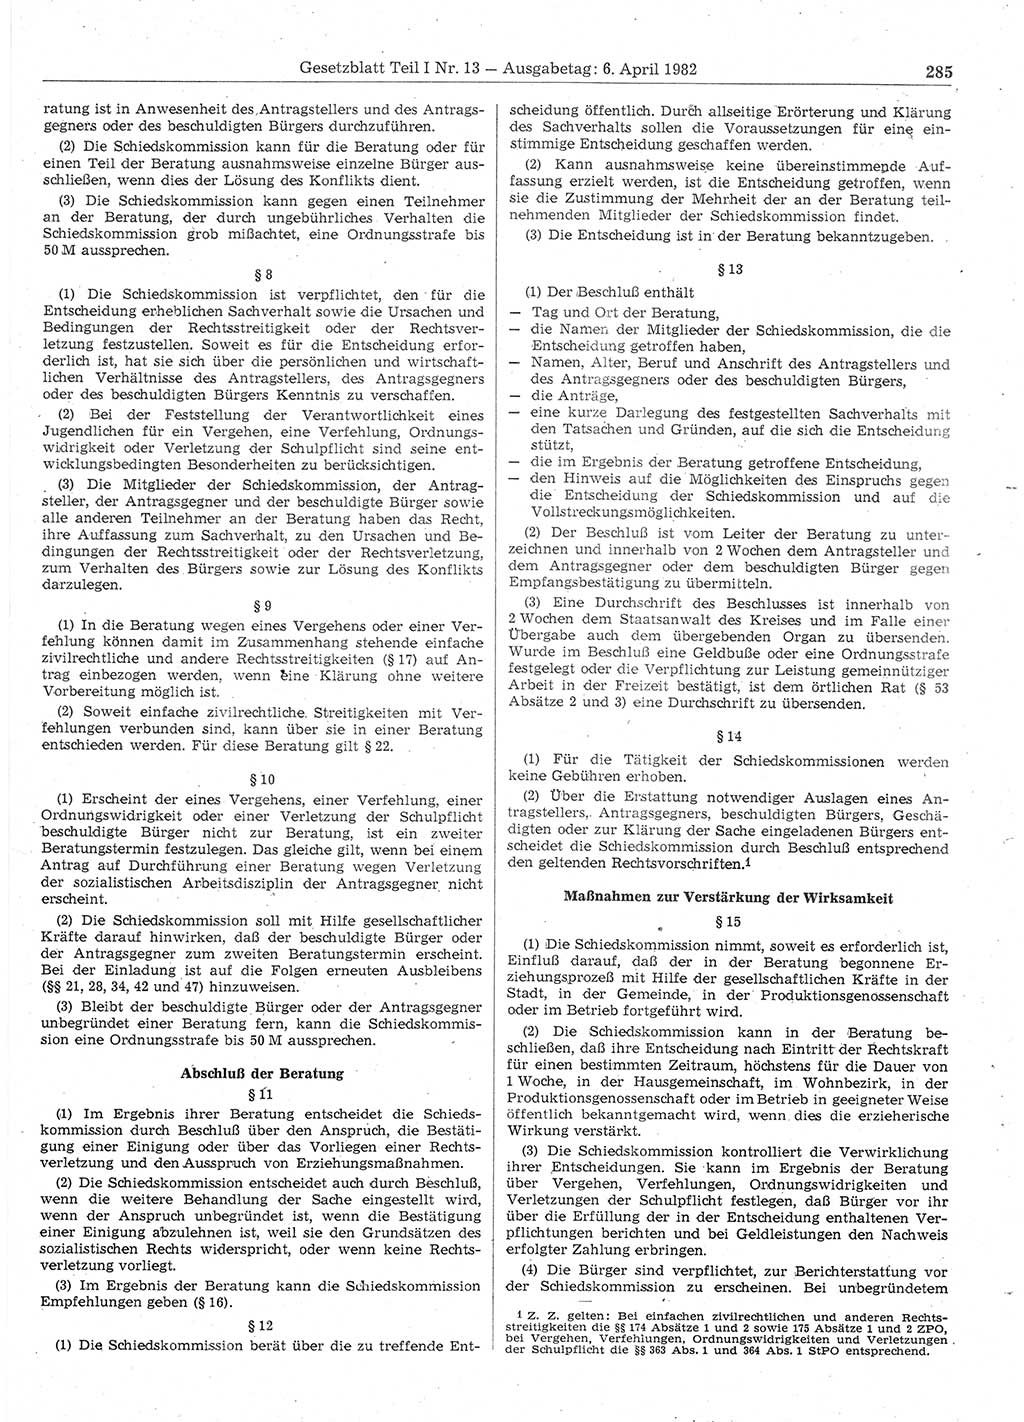 Gesetzblatt (GBl.) der Deutschen Demokratischen Republik (DDR) Teil Ⅰ 1982, Seite 285 (GBl. DDR Ⅰ 1982, S. 285)